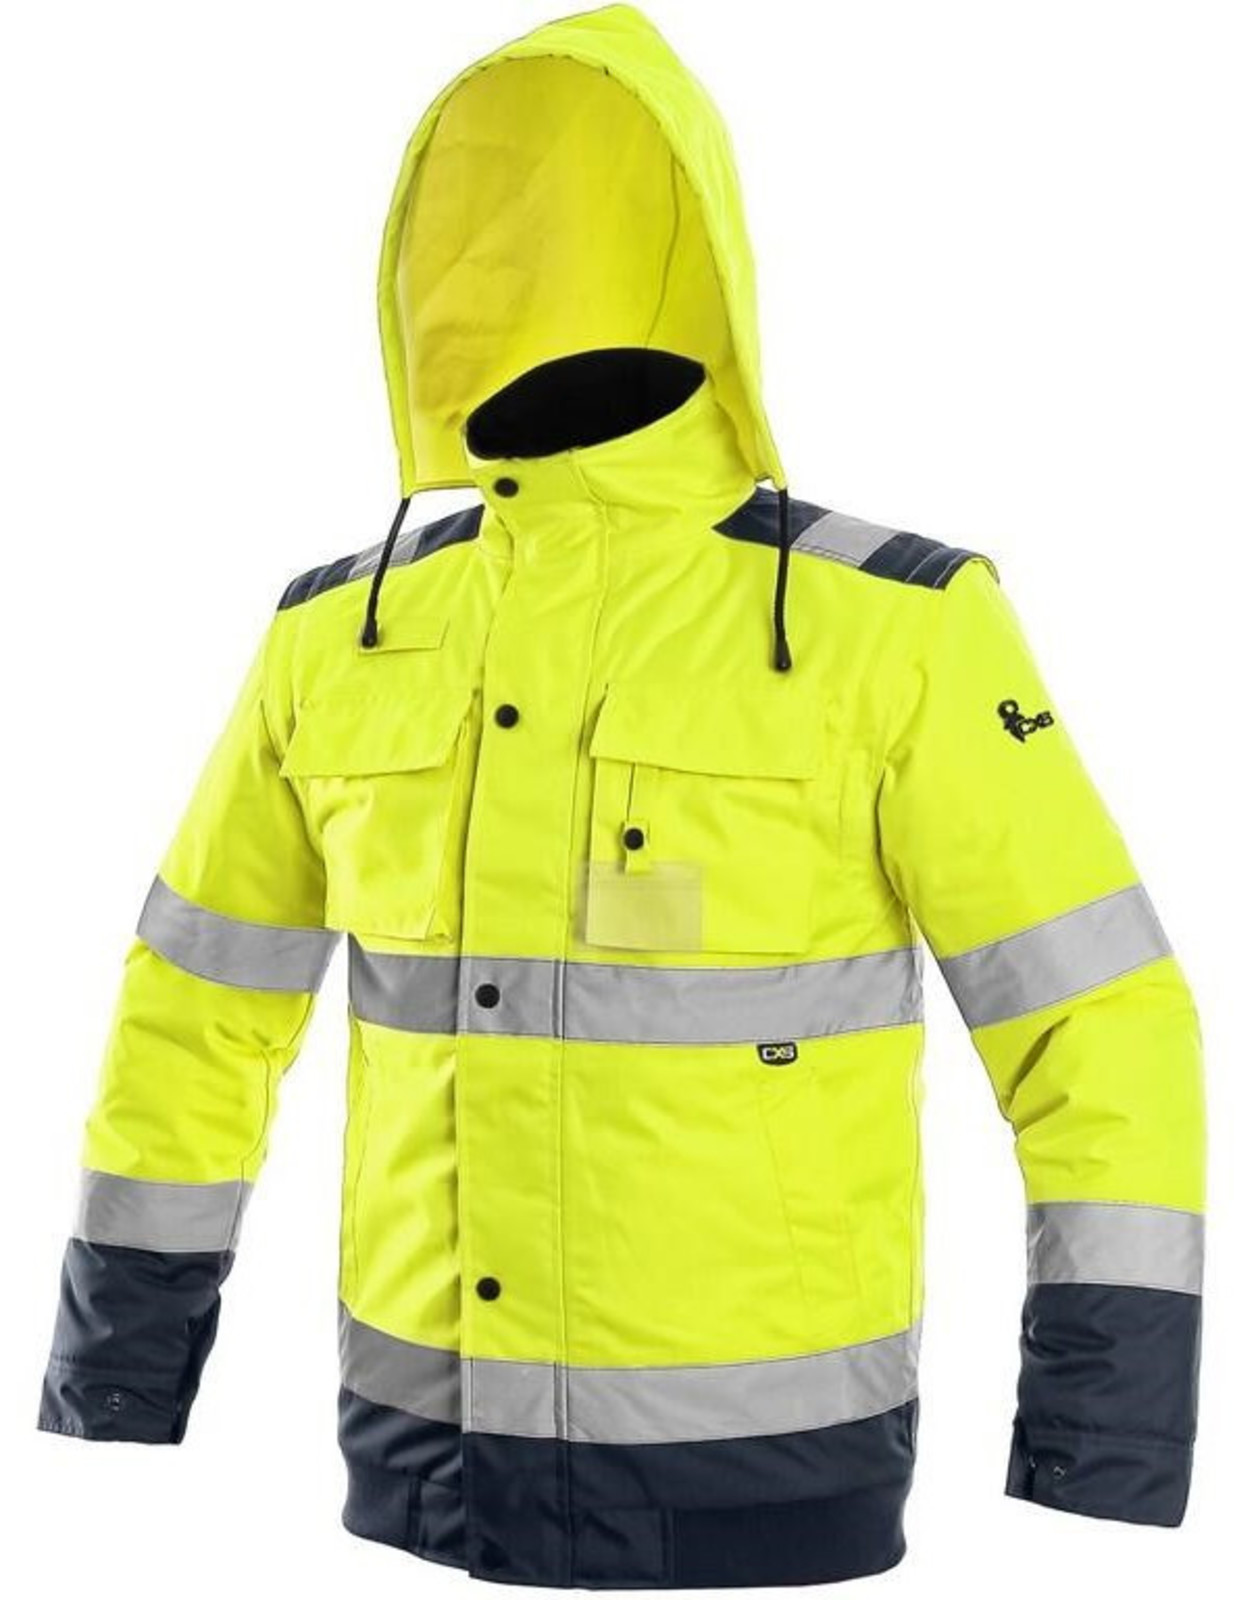 Zimná reflexná bunda CXS Luton 2v1 - veľkosť: 3XL, farba: žltá/navy